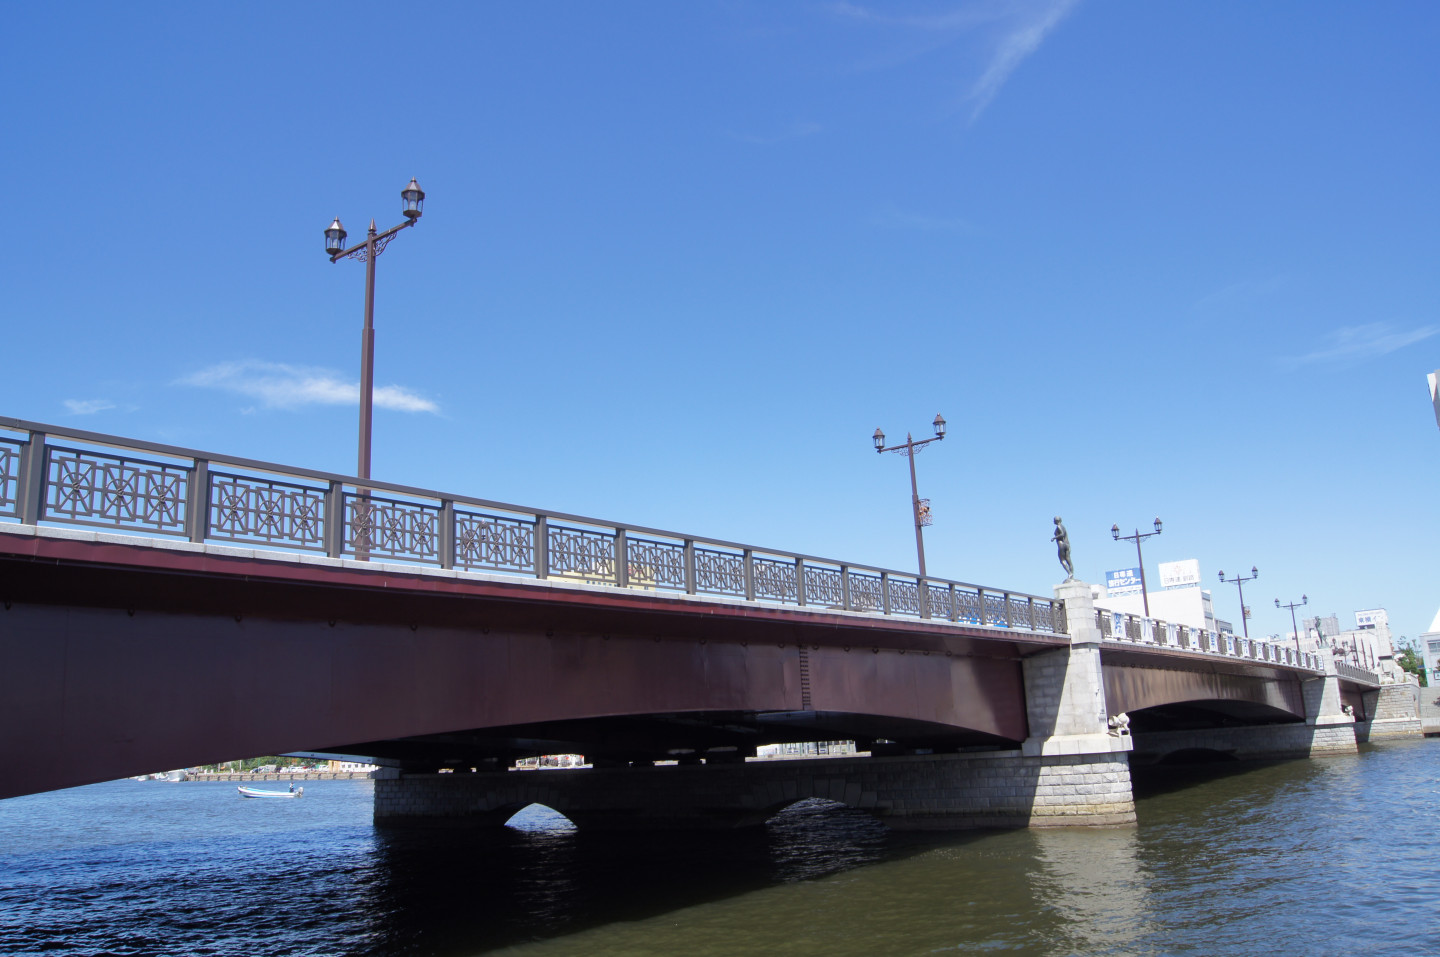 电影《挽歌》的取景地主要以币舞桥和钏路川河畔为主。